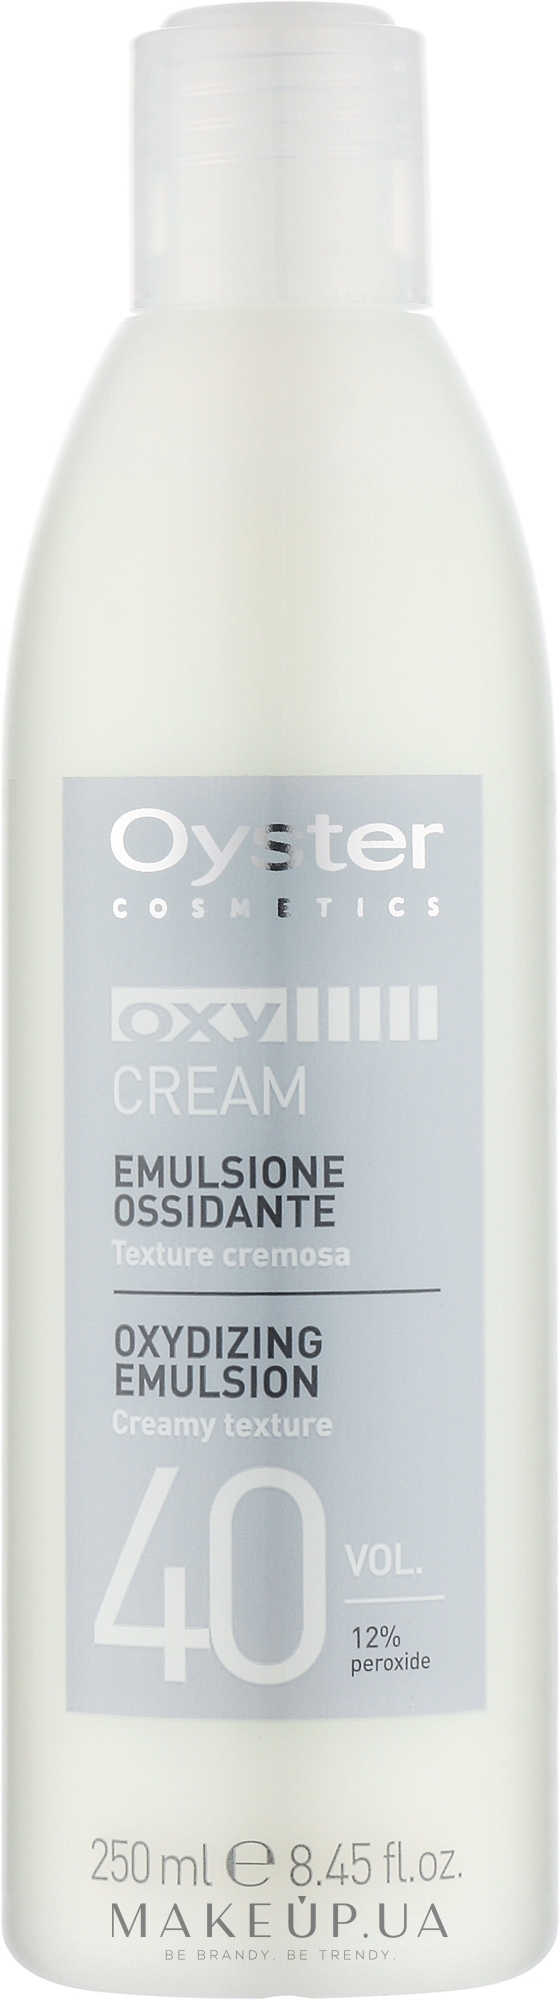 Окислитель 40 Vol 12% - Oyster Cosmetics Oxy Cream Oxydant — фото 250ml